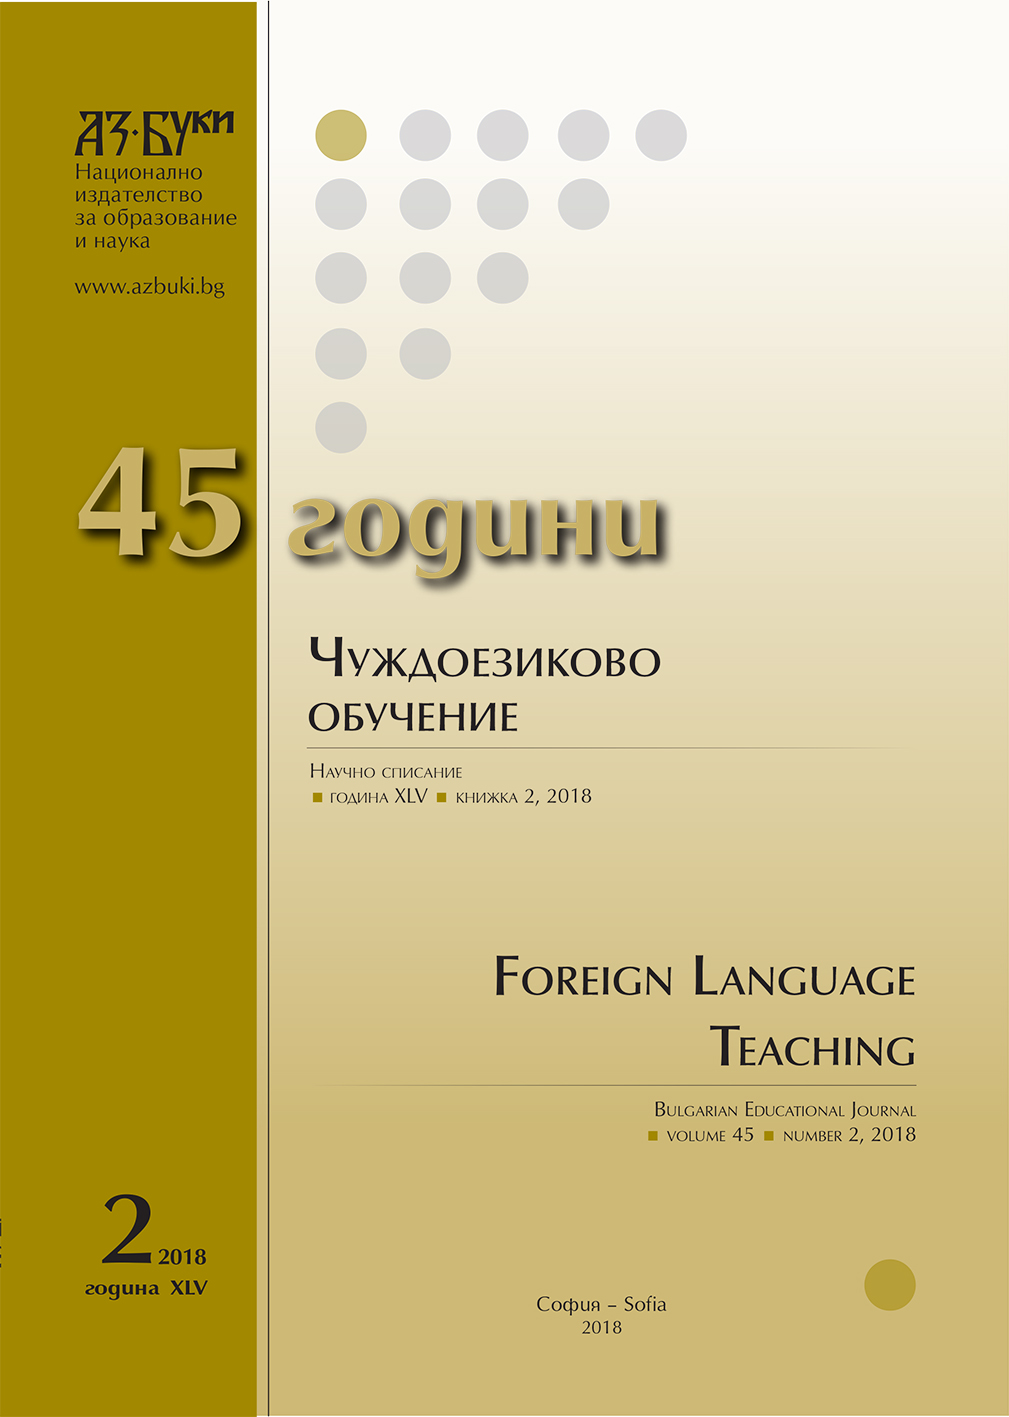 Усвояване и учене на втори език: педагогически аспекти